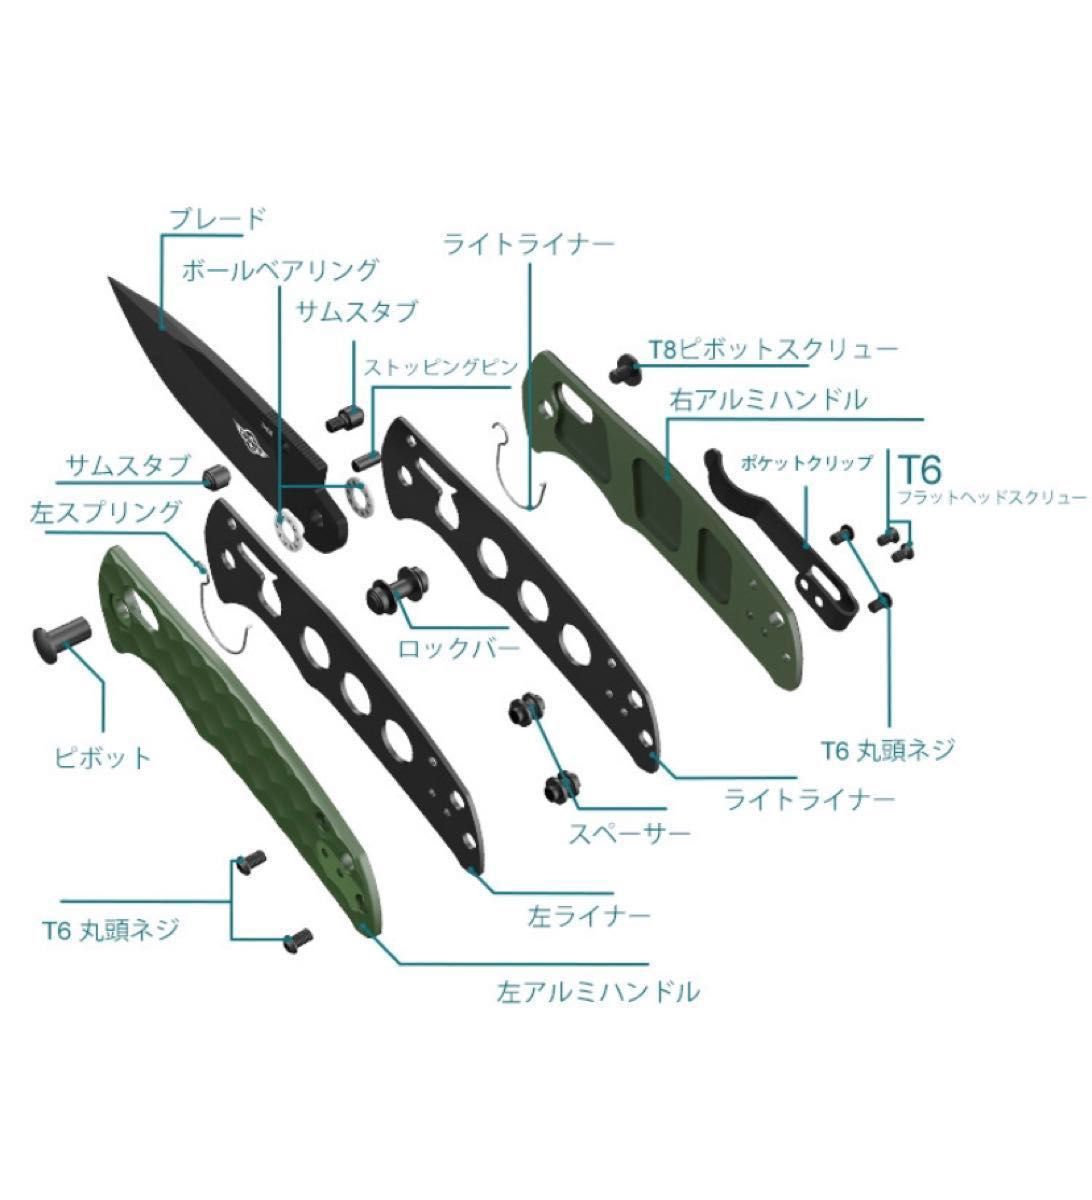 オーナイフ　Oknife Rubato 3 折り畳み式ツール 154CMステンレス鋼製 ルバト3 オーライトolight